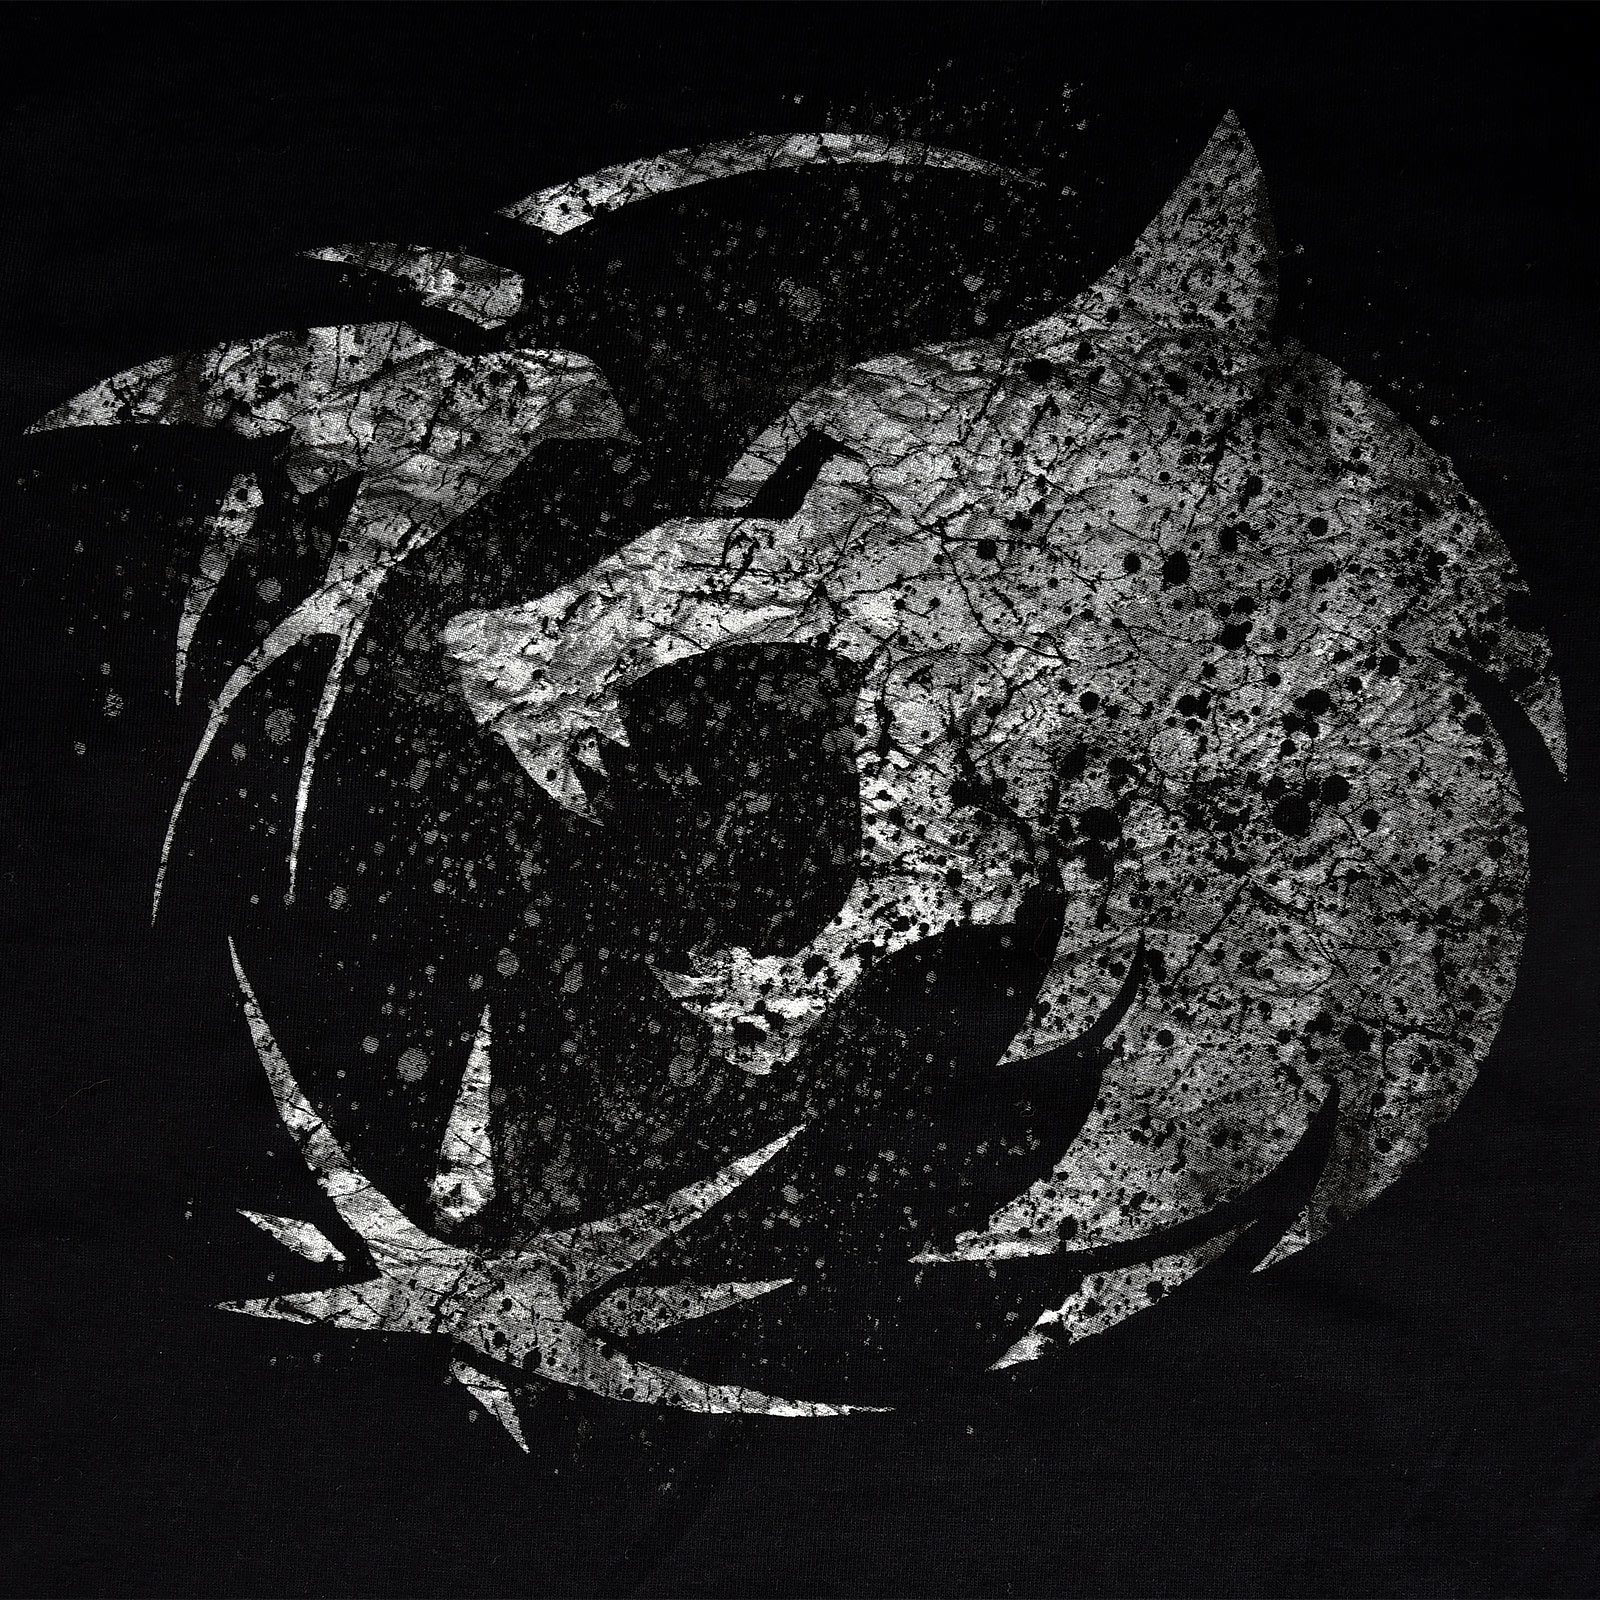 Wolf Emblem T-Shirt für Witcher Fans schwarz